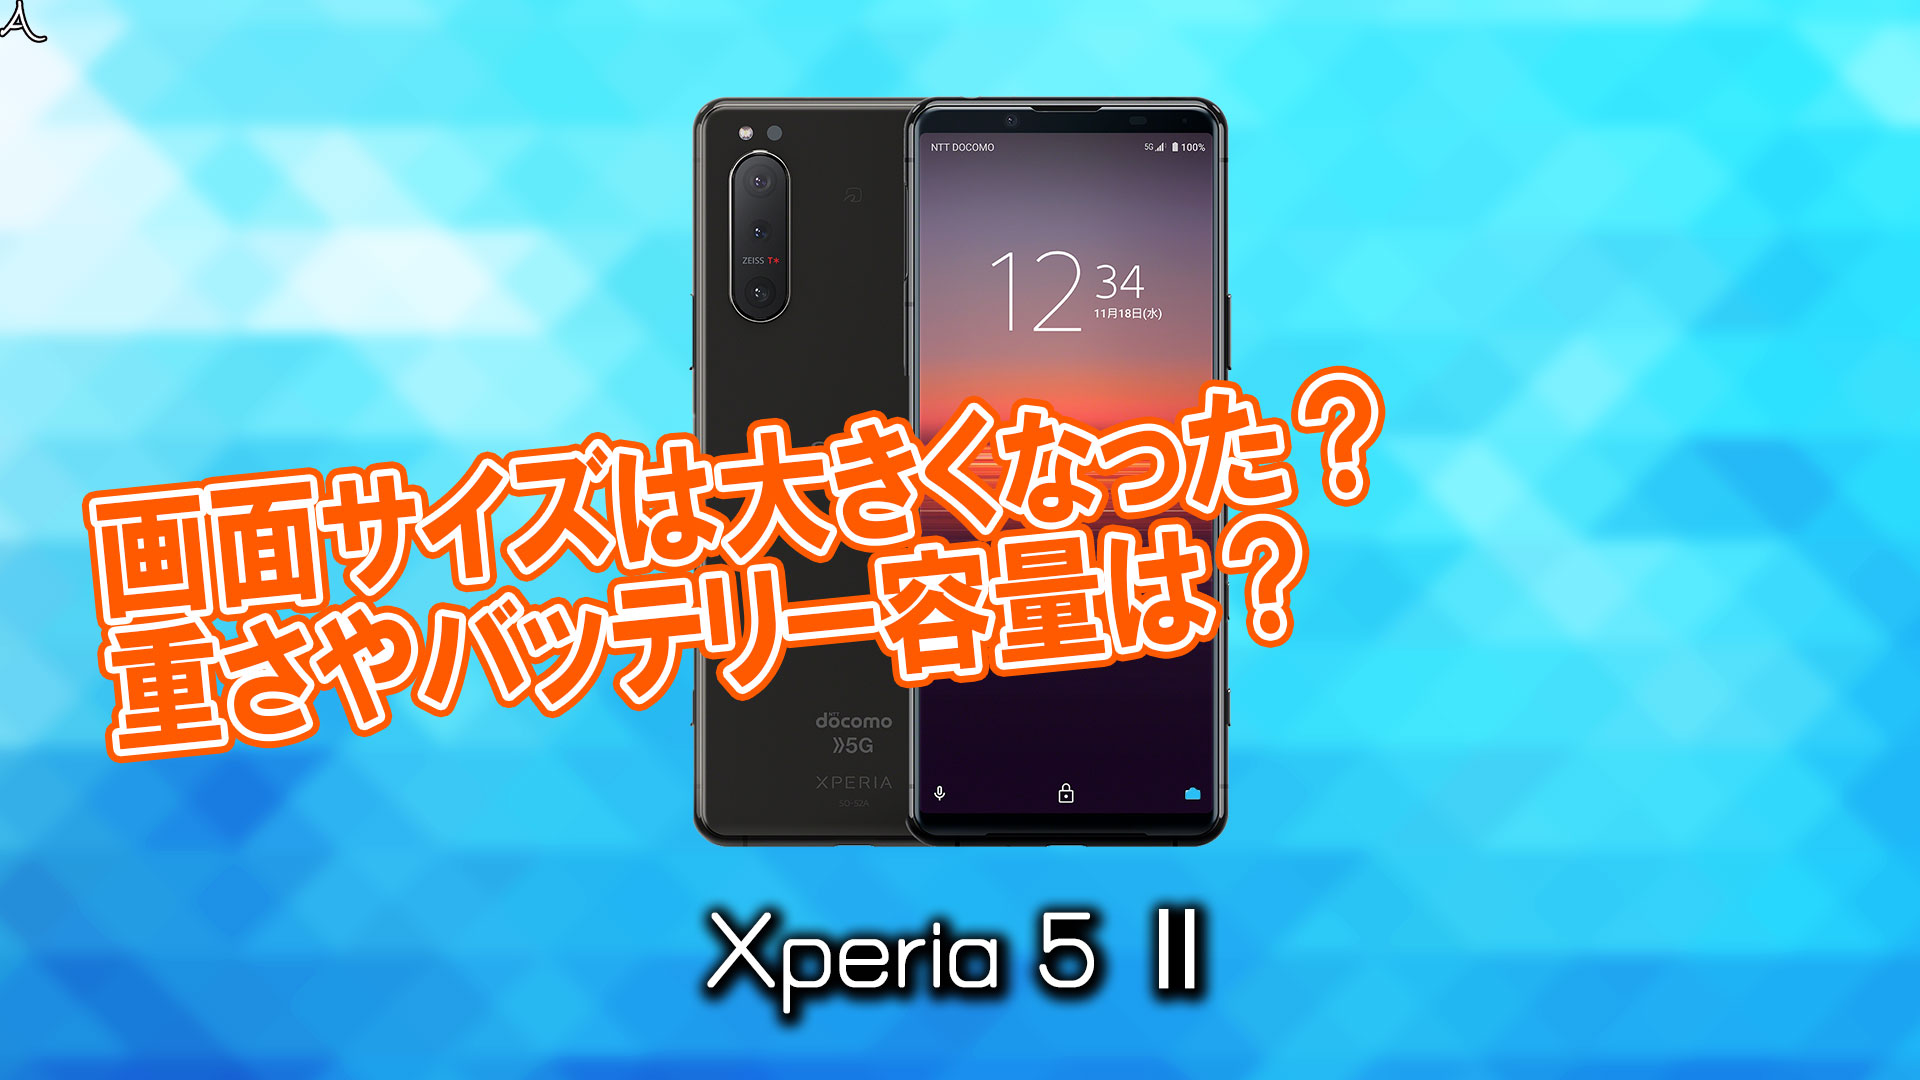 「Xperia 5 Ⅱ」のサイズや重さを他のスマホと細かく比較